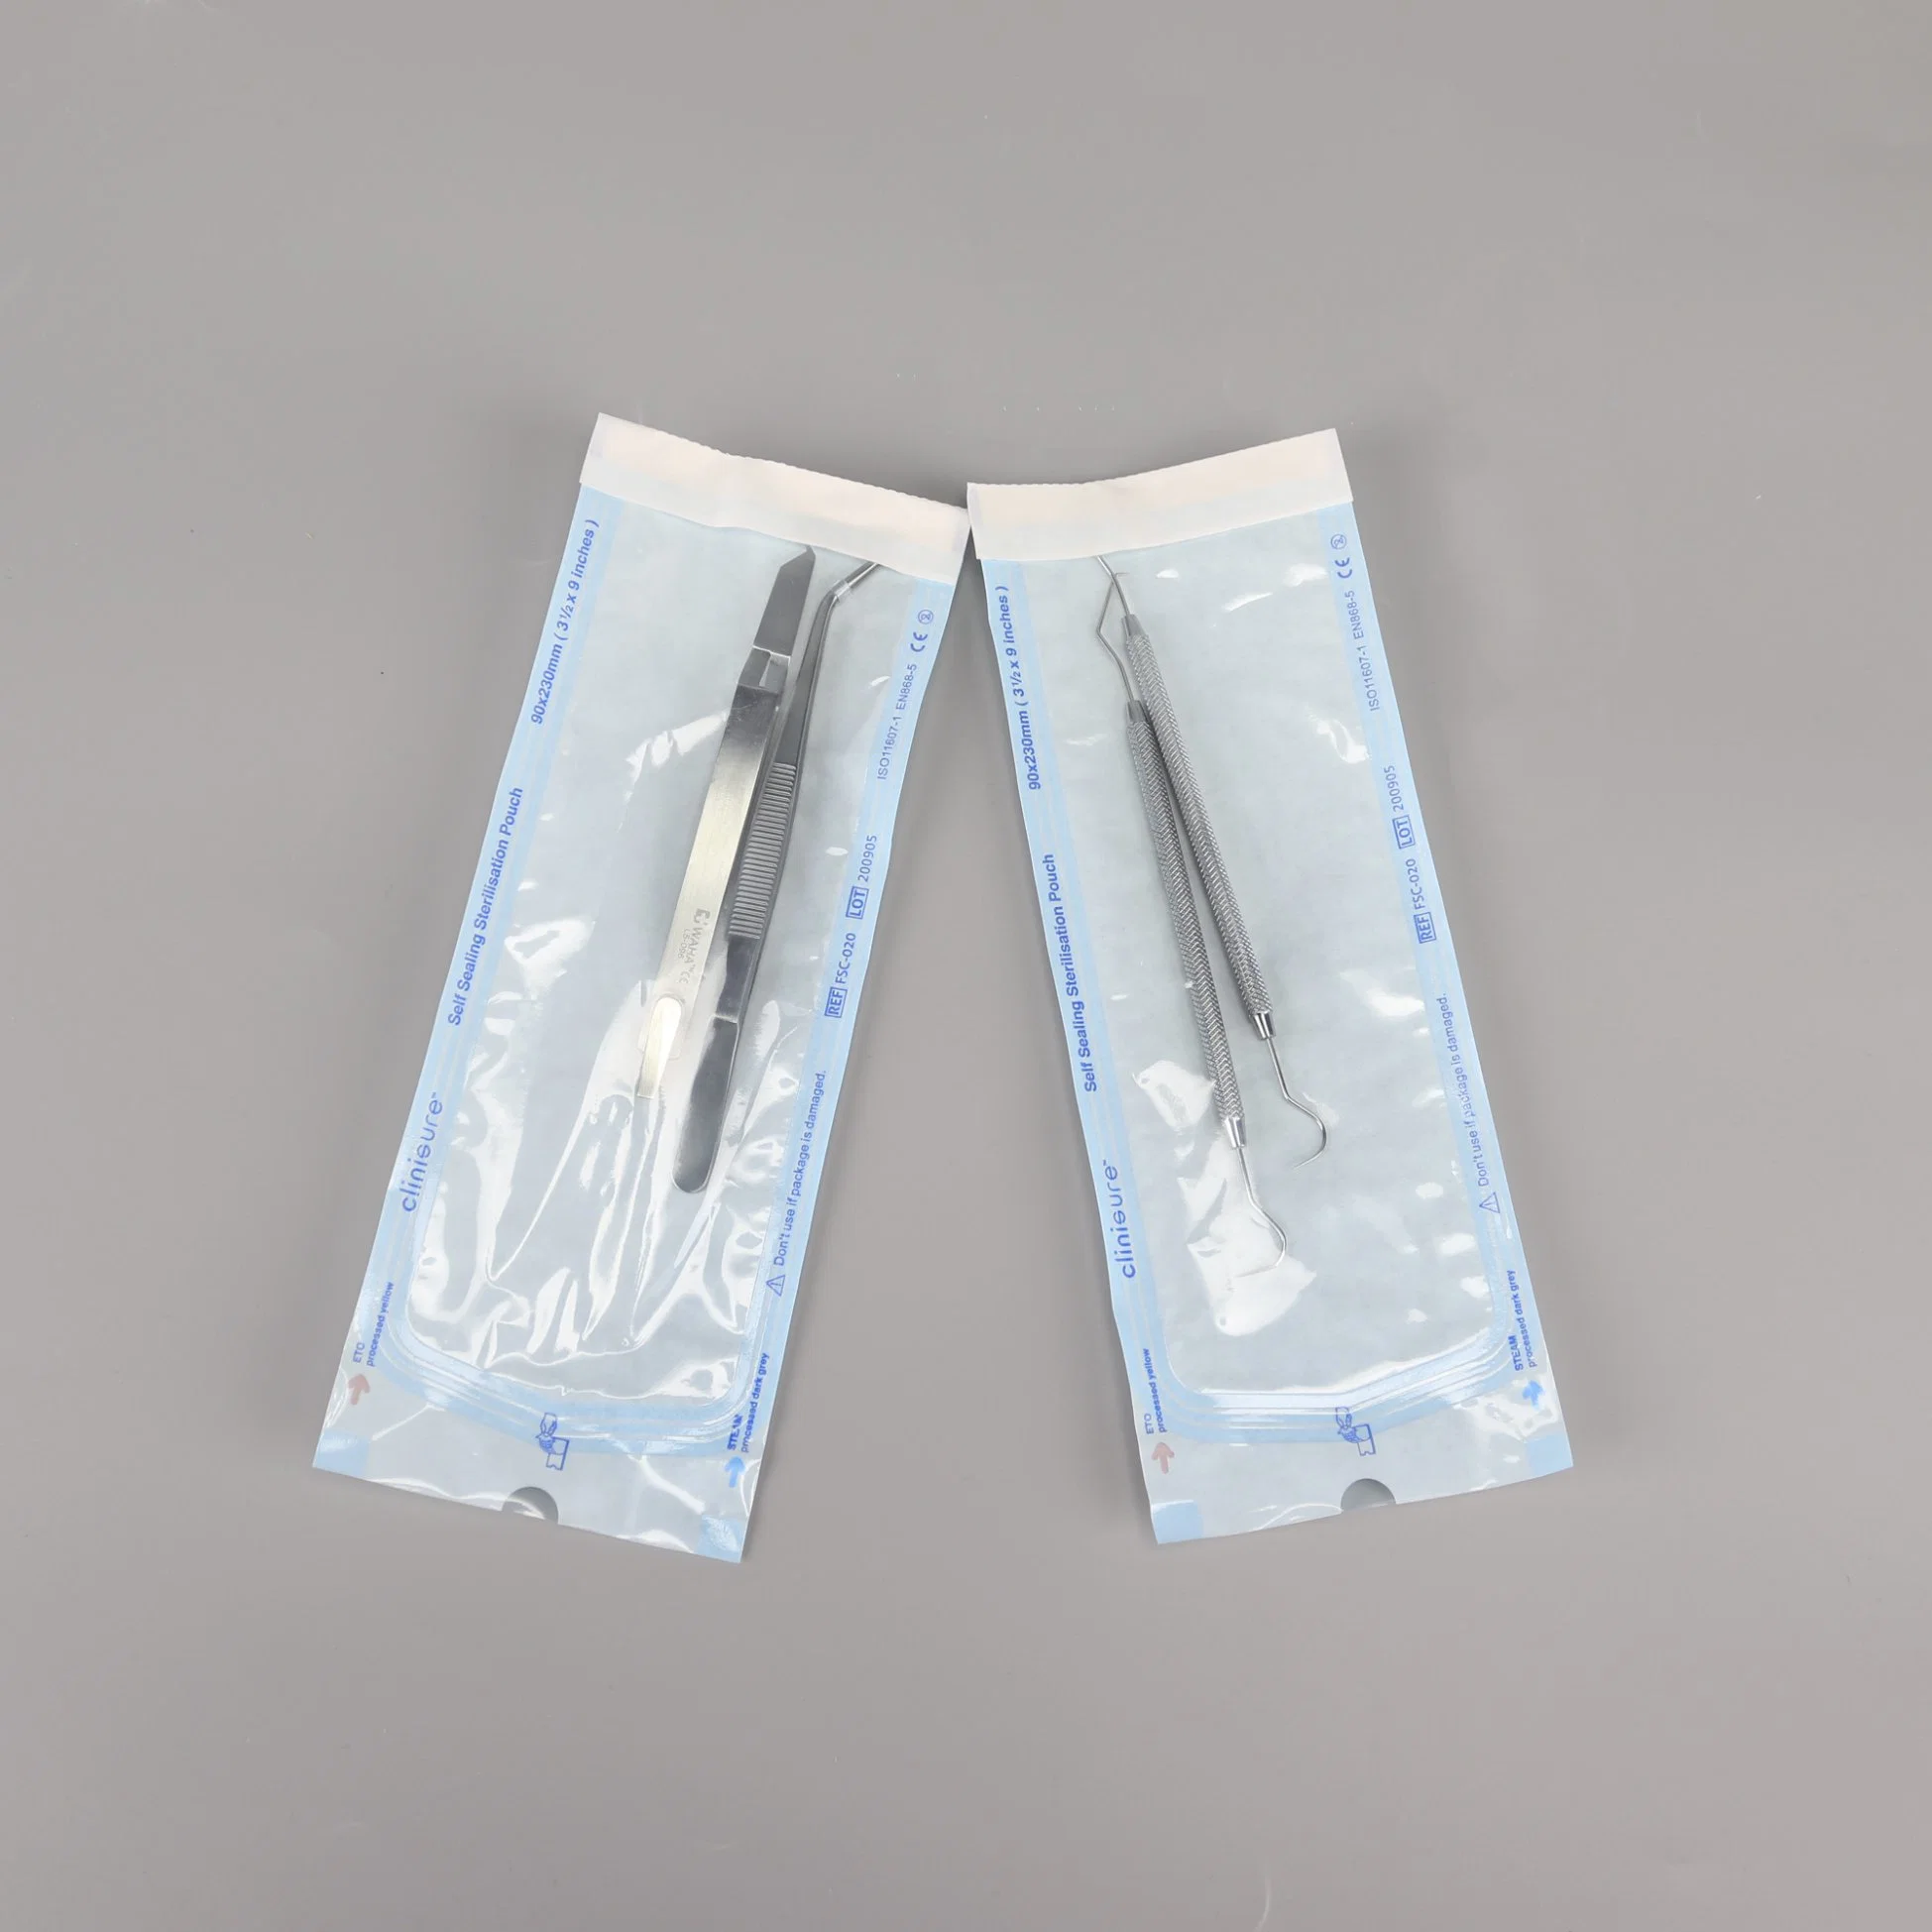 Bestseller Taschen Selbstversiegelende Sterilisationsbeutel Medizinische Geräte Verpackung Beutel